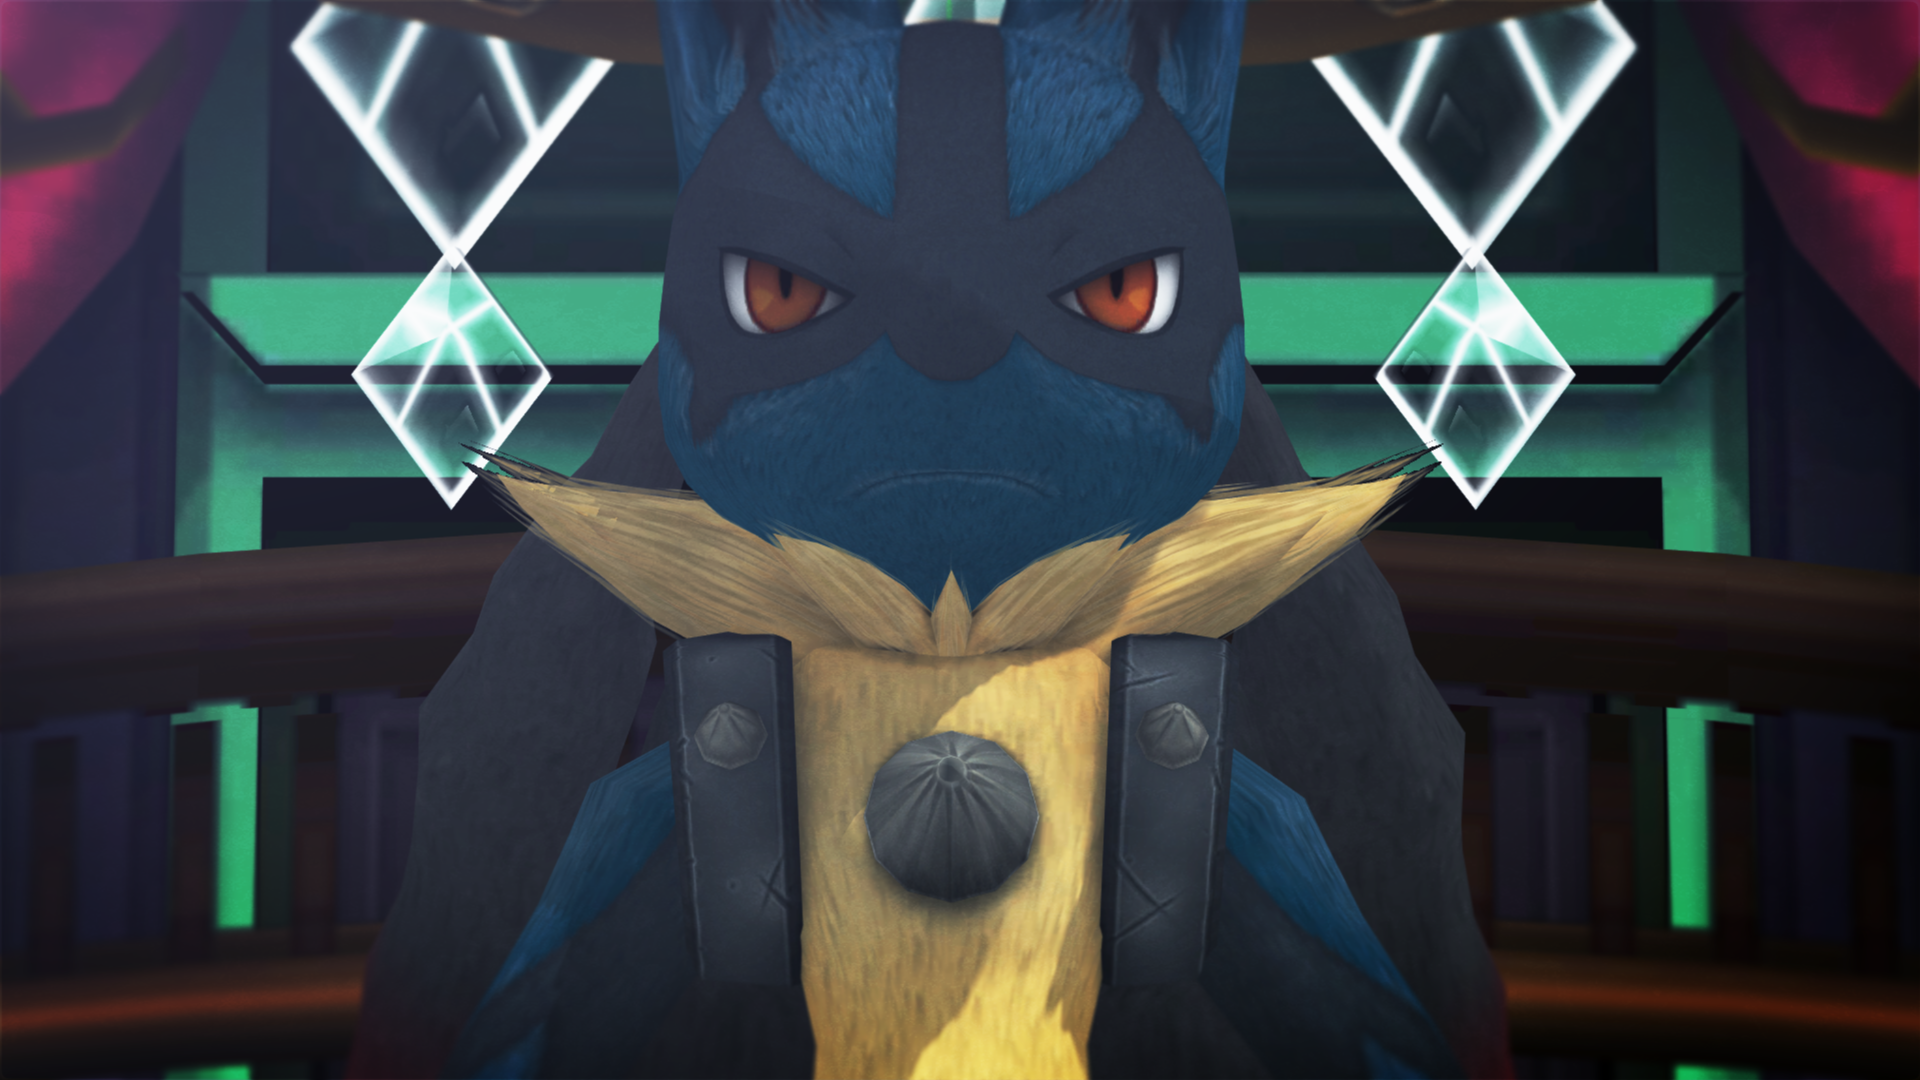 HD wallpaper: Pokémon, Pokken Tournament, Lucario (Pokémon), Mega Lucario  (Pokémon)